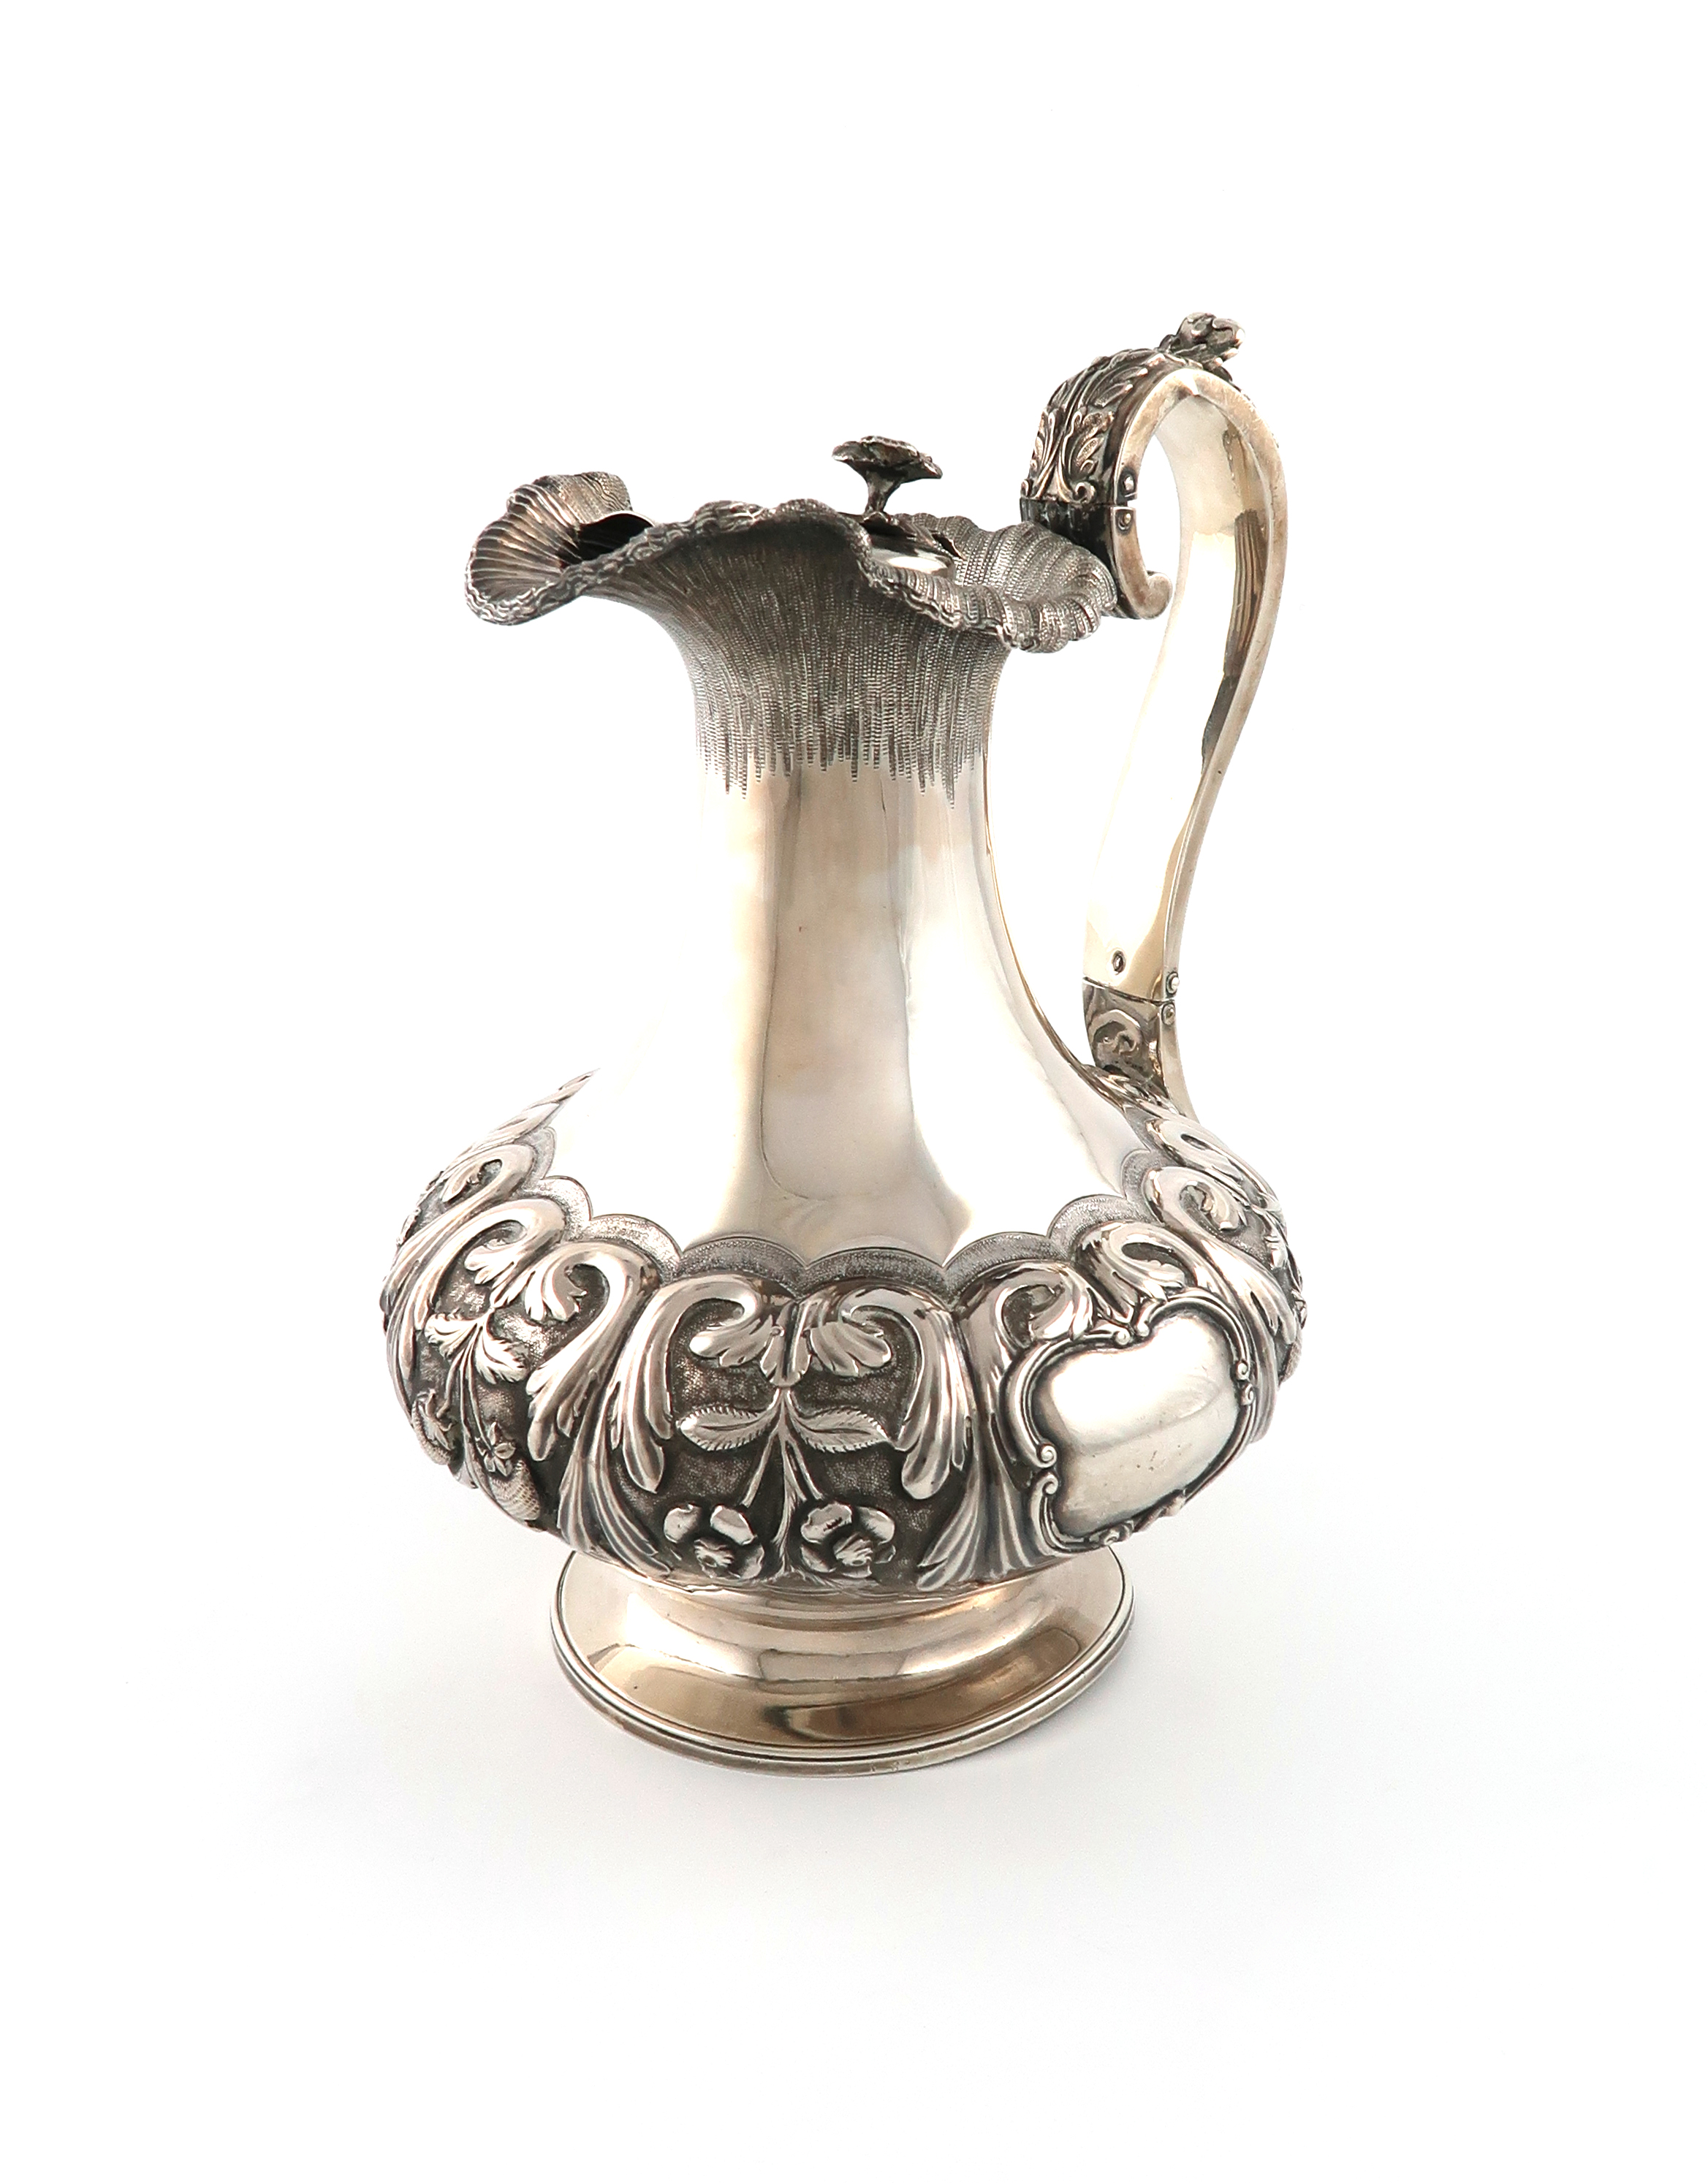 An early Victorian Irish silver hot water ewer, no apparent maker's mark, Dublin 1837, lobed